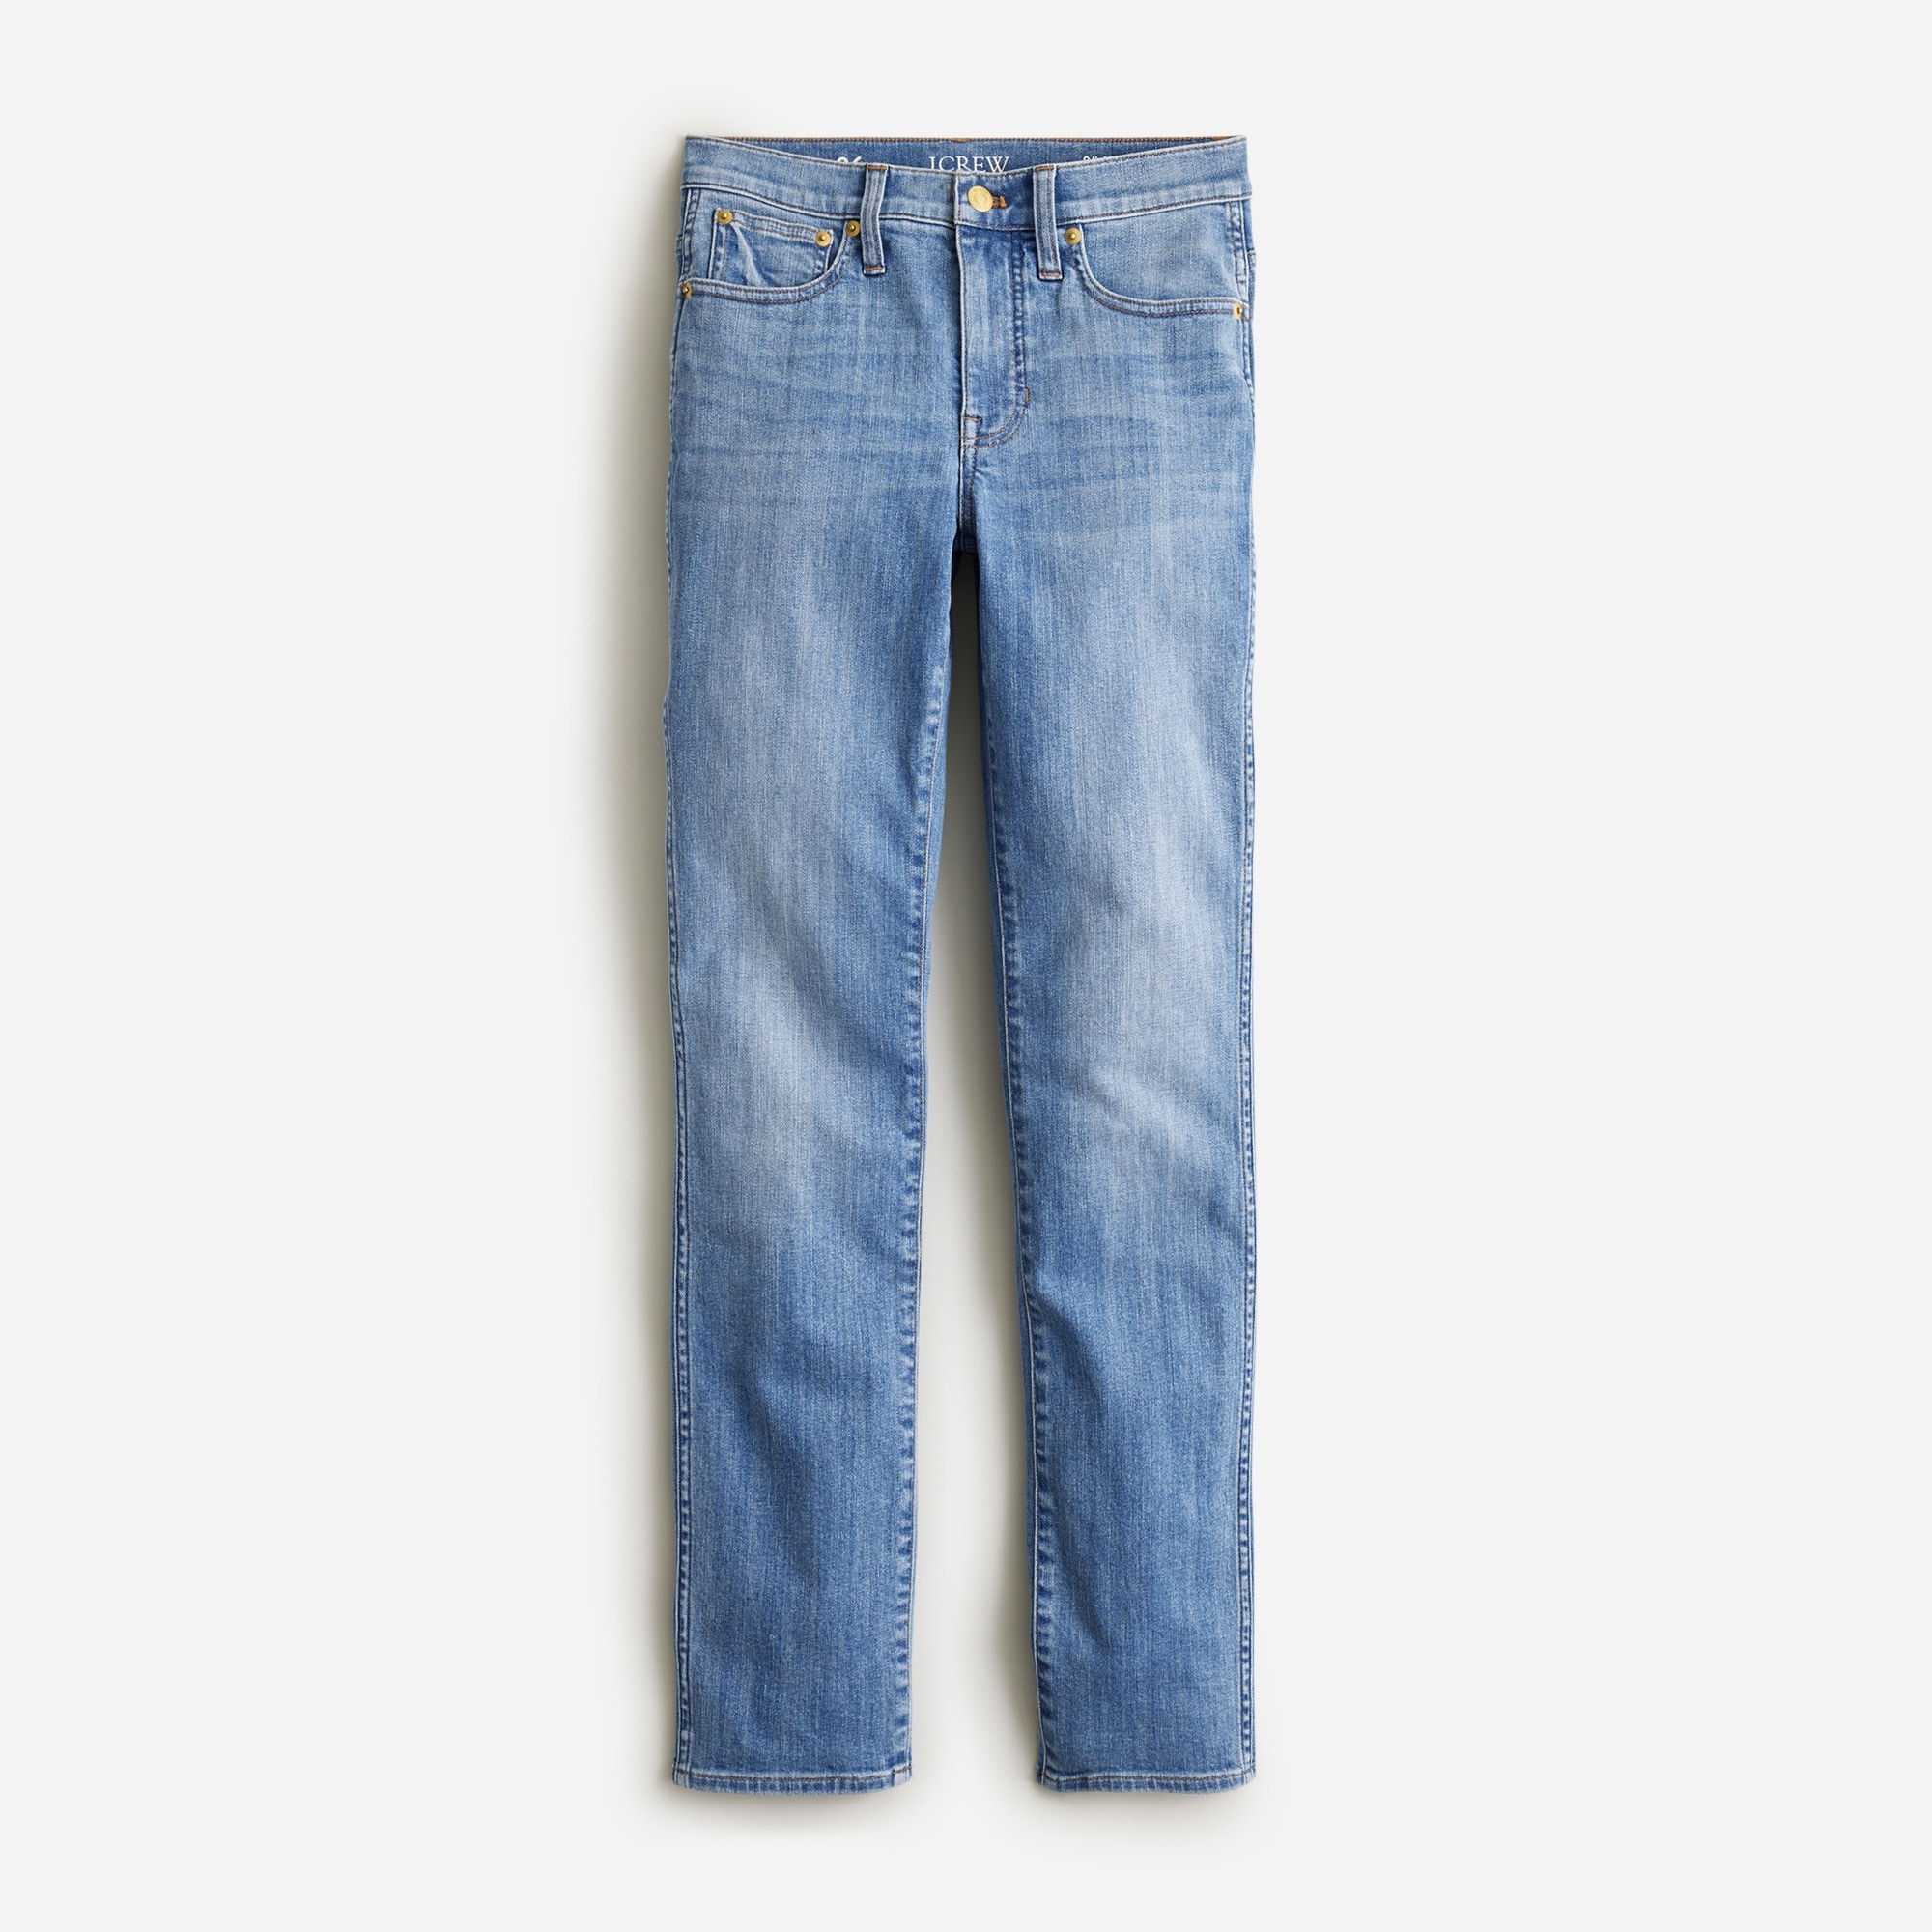  Tall vintage slim-straight jean in Lakewood wash